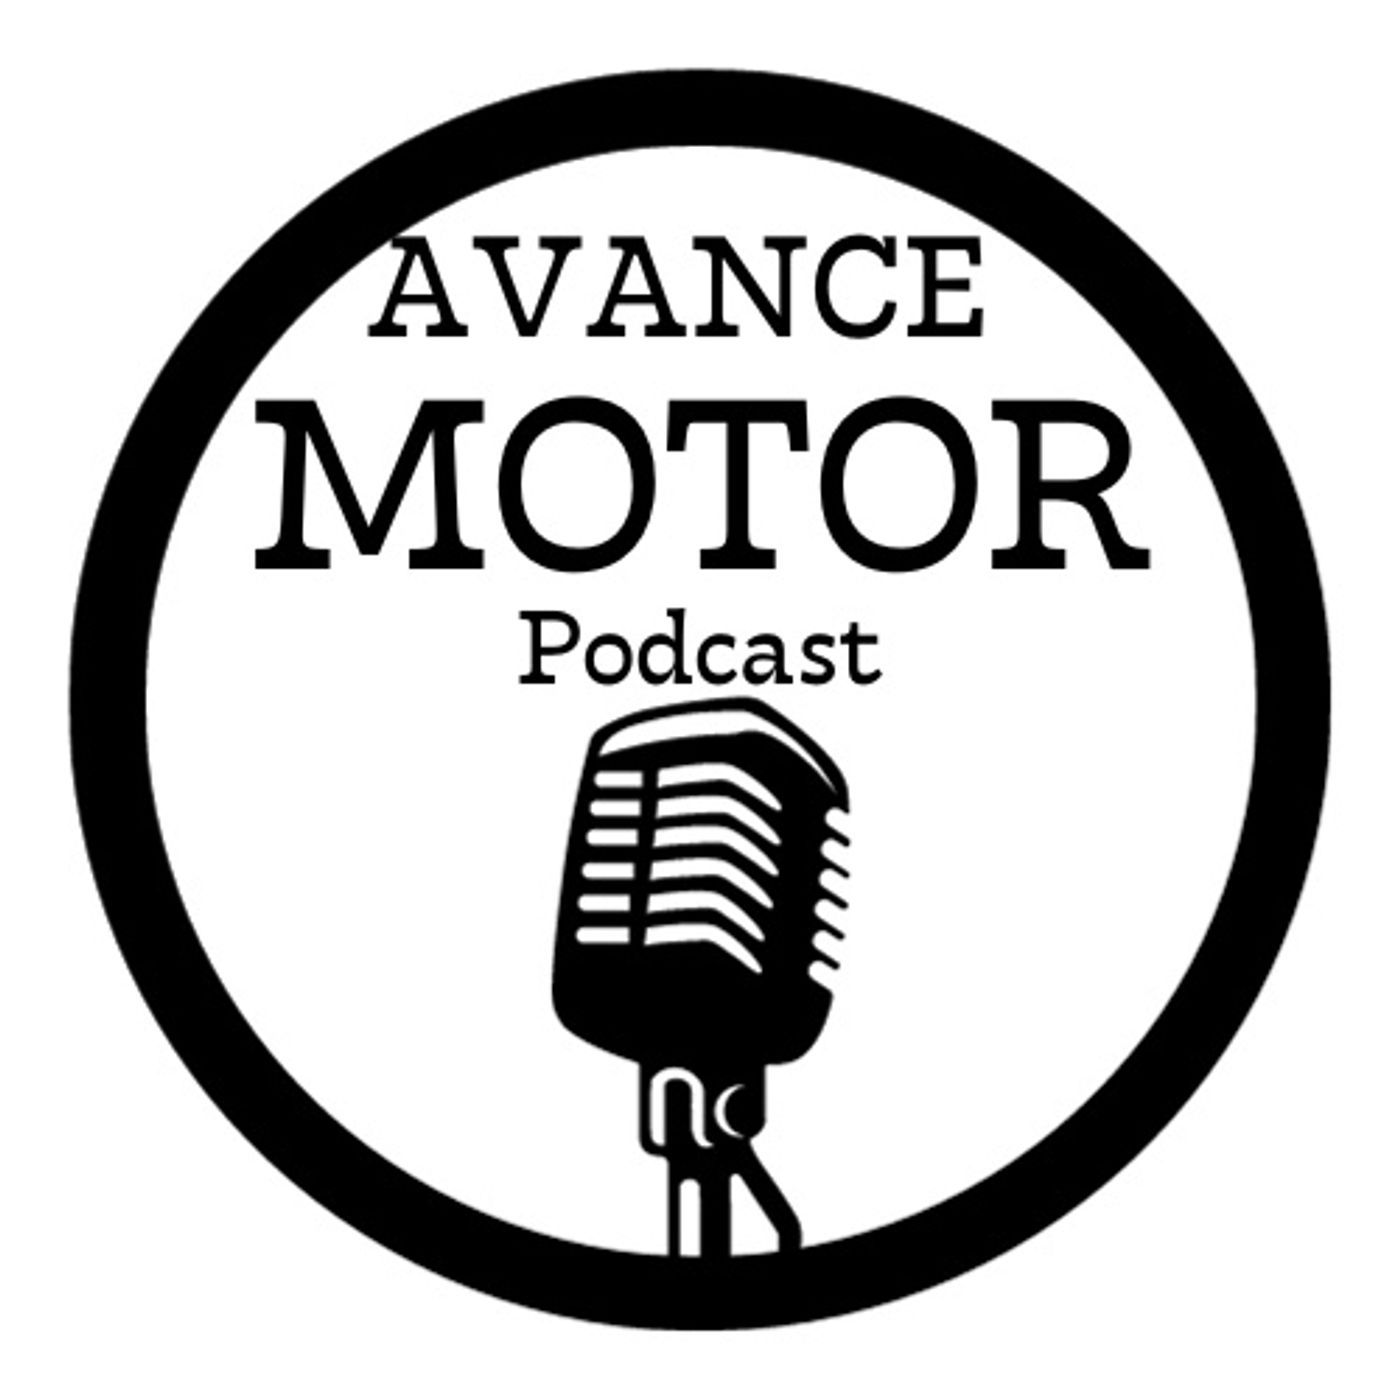 Avance Motor Podcast.